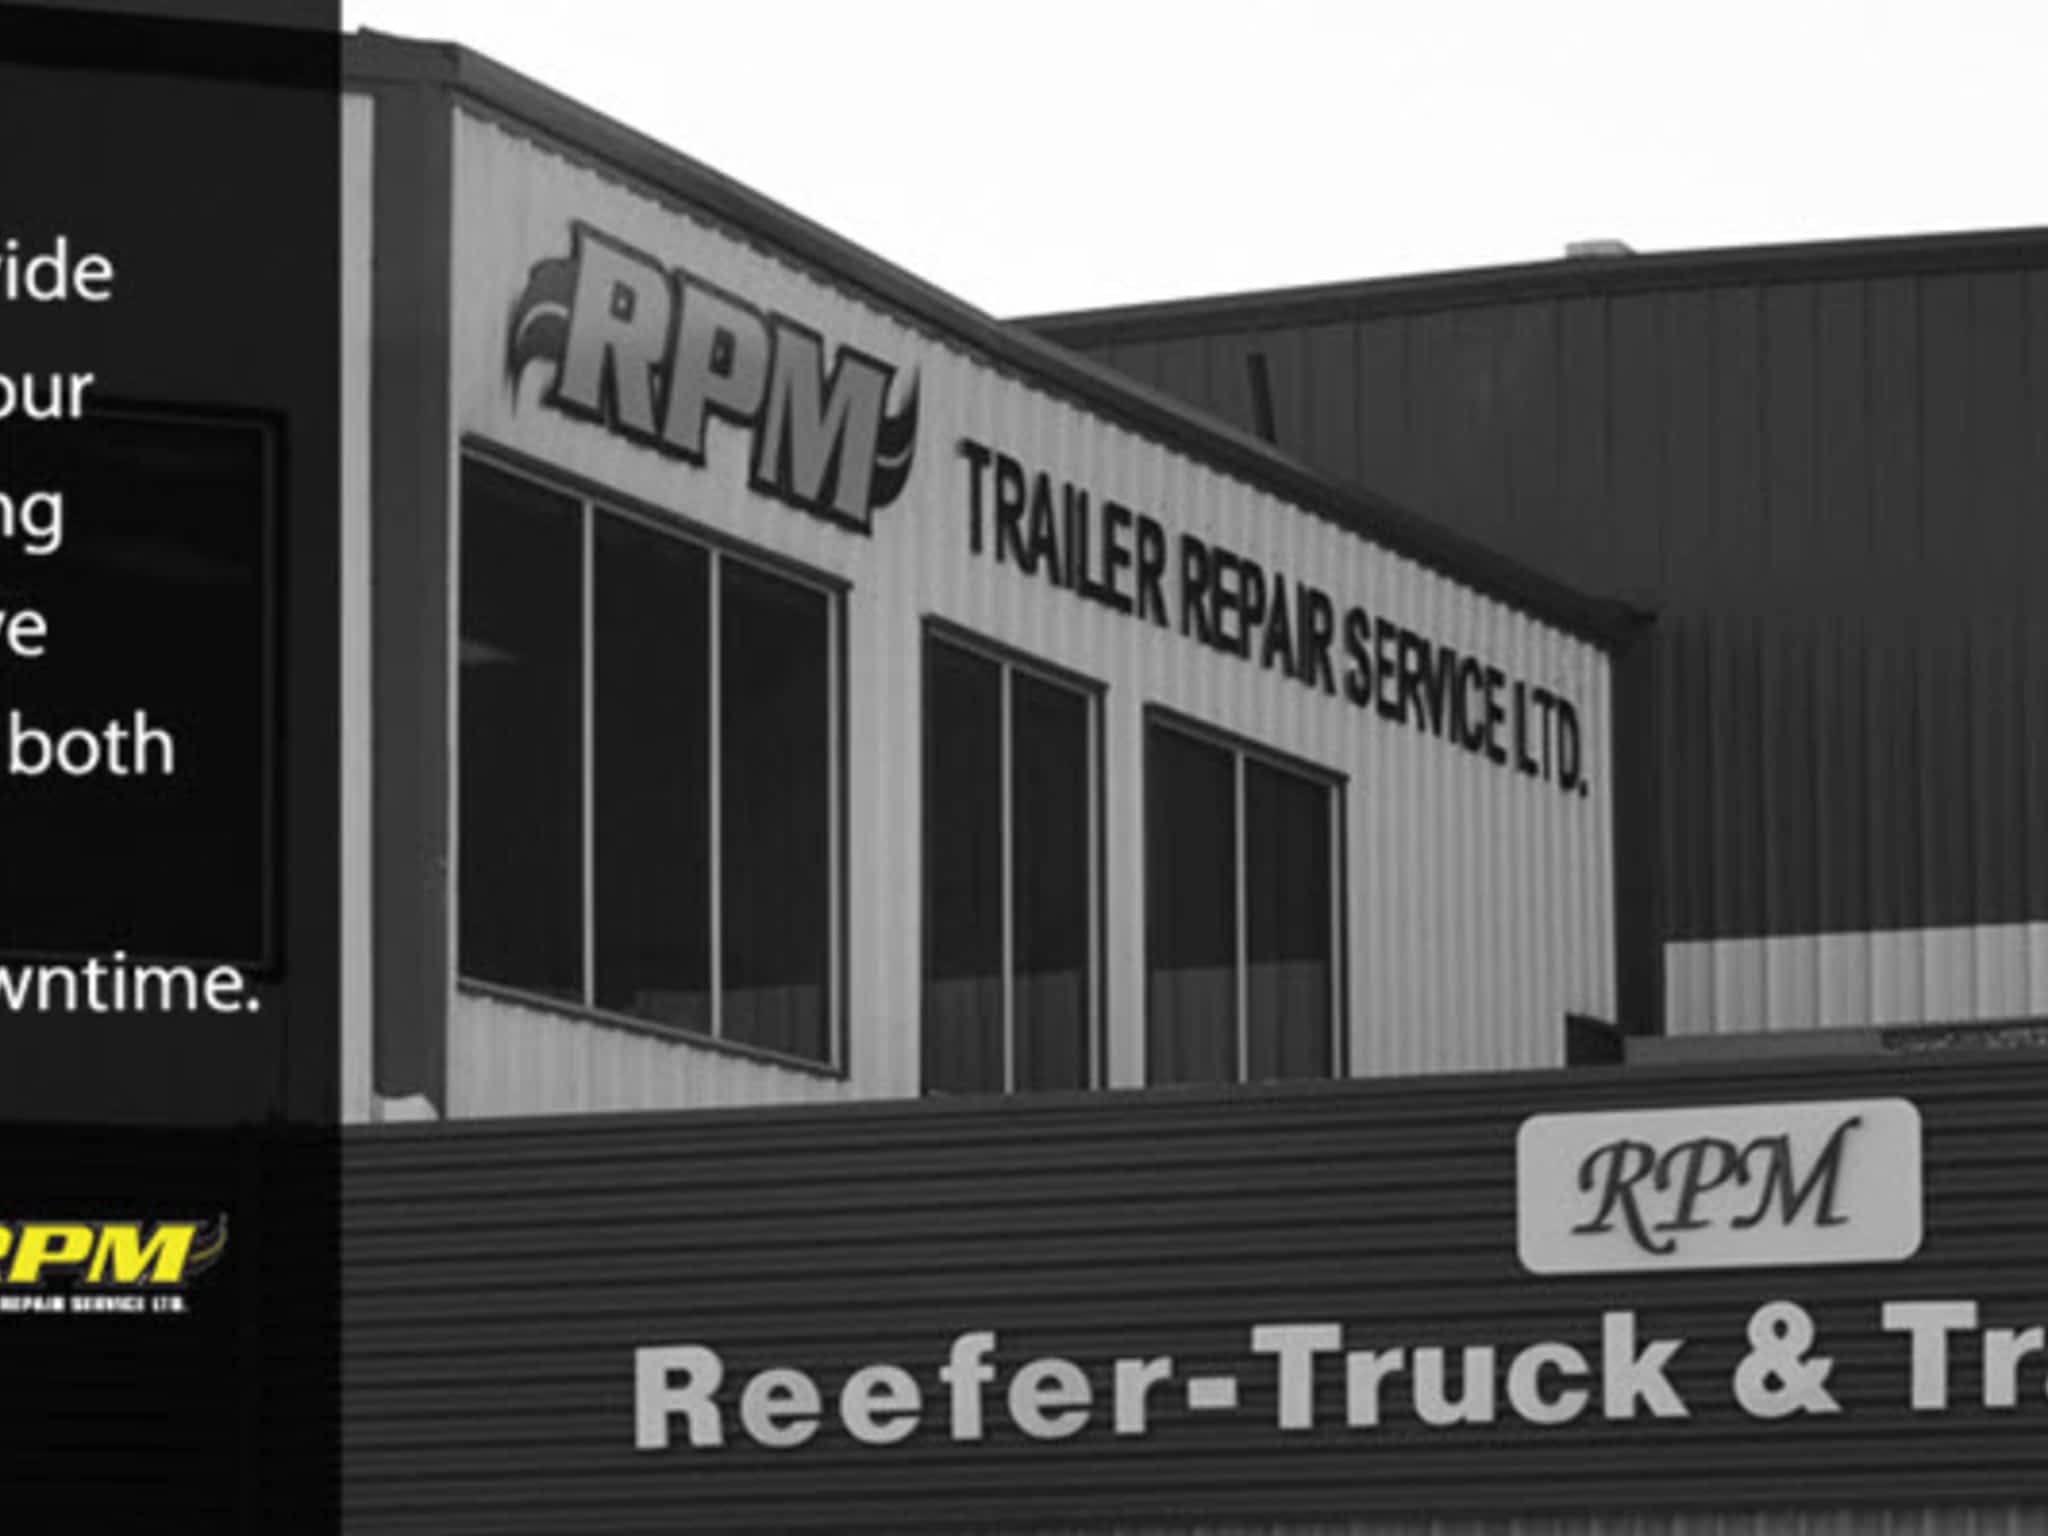 photo R P M Trailer Repair Services Ltd